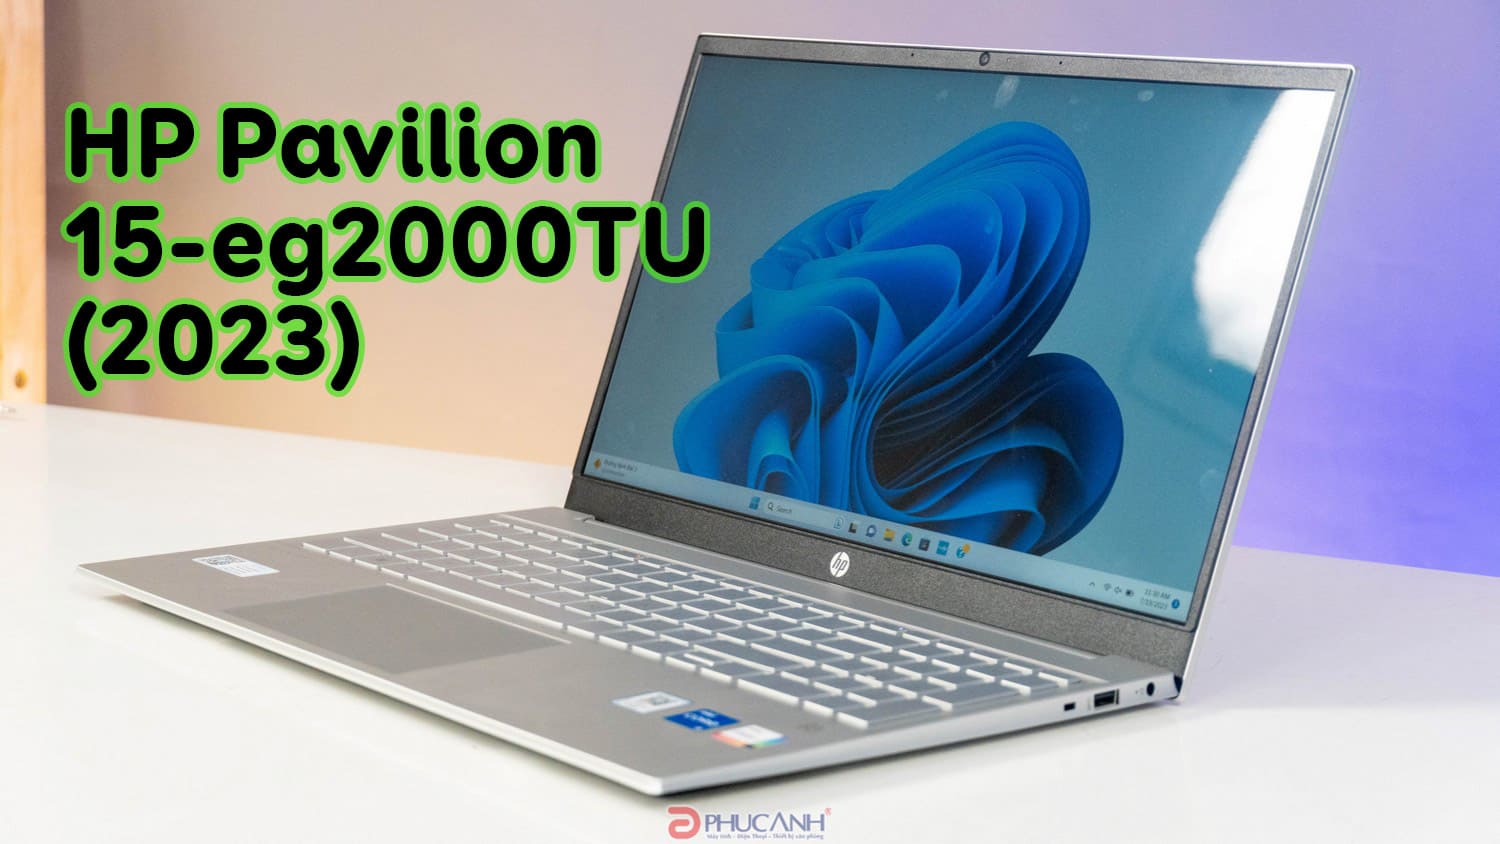 Đánh giá HP Pavilion 15-eg2000TU (2023) - Thiết kế gọn nhẹ cùng sức mạnh ấn tượng từ CPU intel thế hệ 12 dòng P